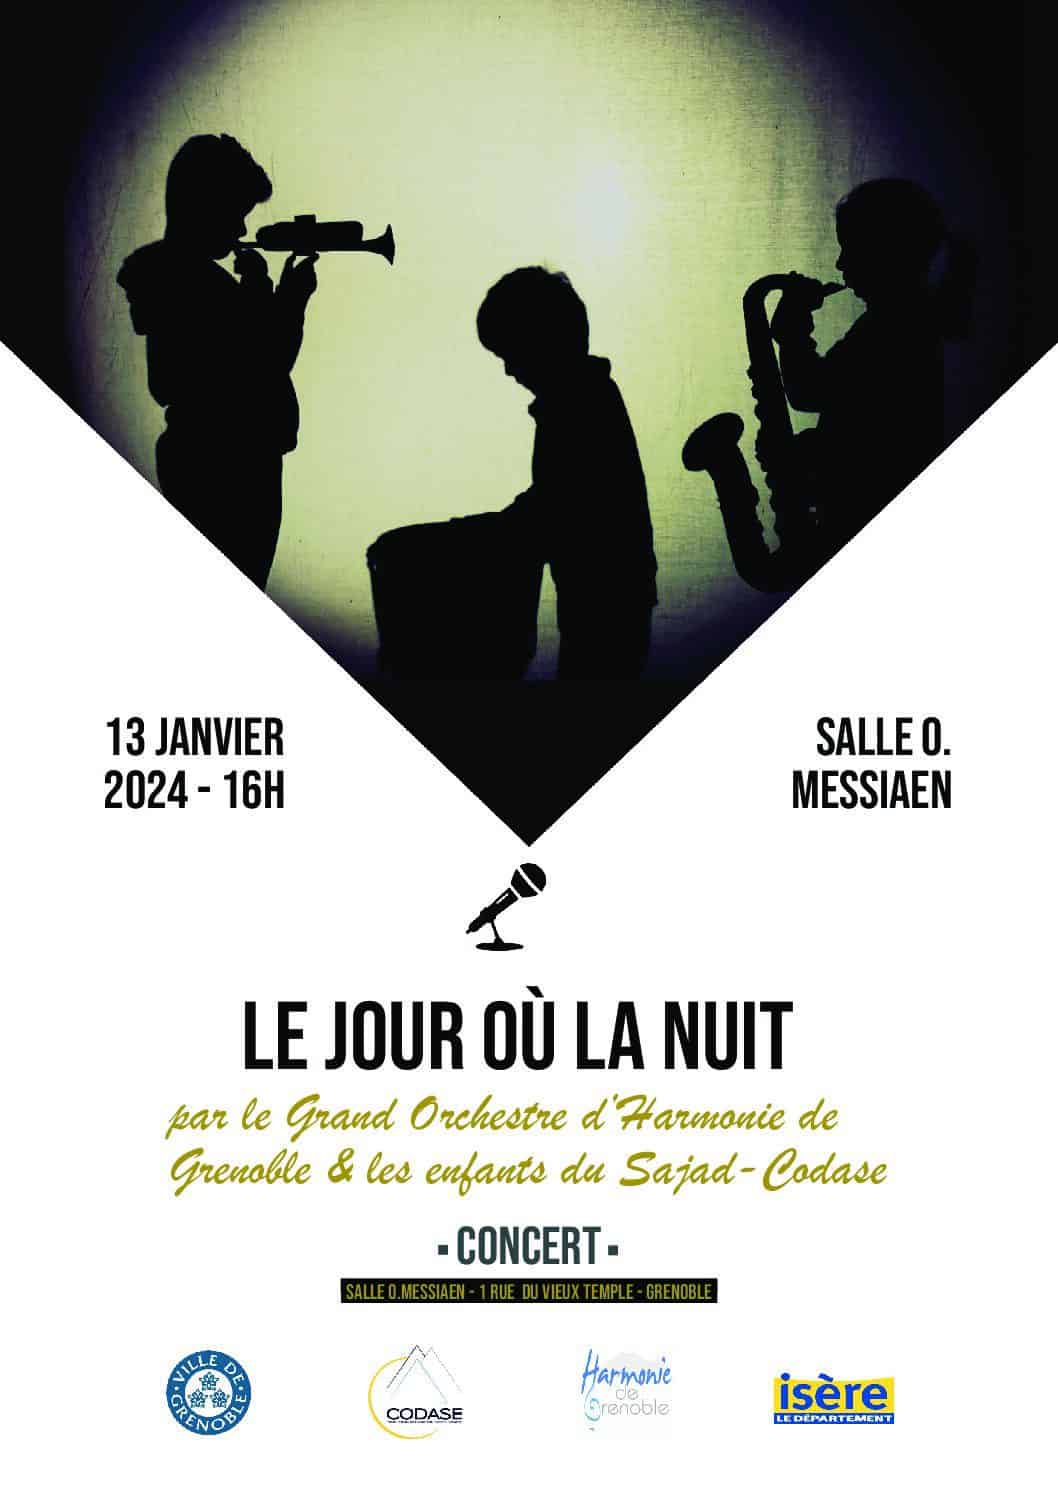 Concert « Le jour où la nuit » par le Grand Orchestre d’Harmonie de Grenoble et les enfants accompagnés au SAJAD, le samedi 13 janvier 2024